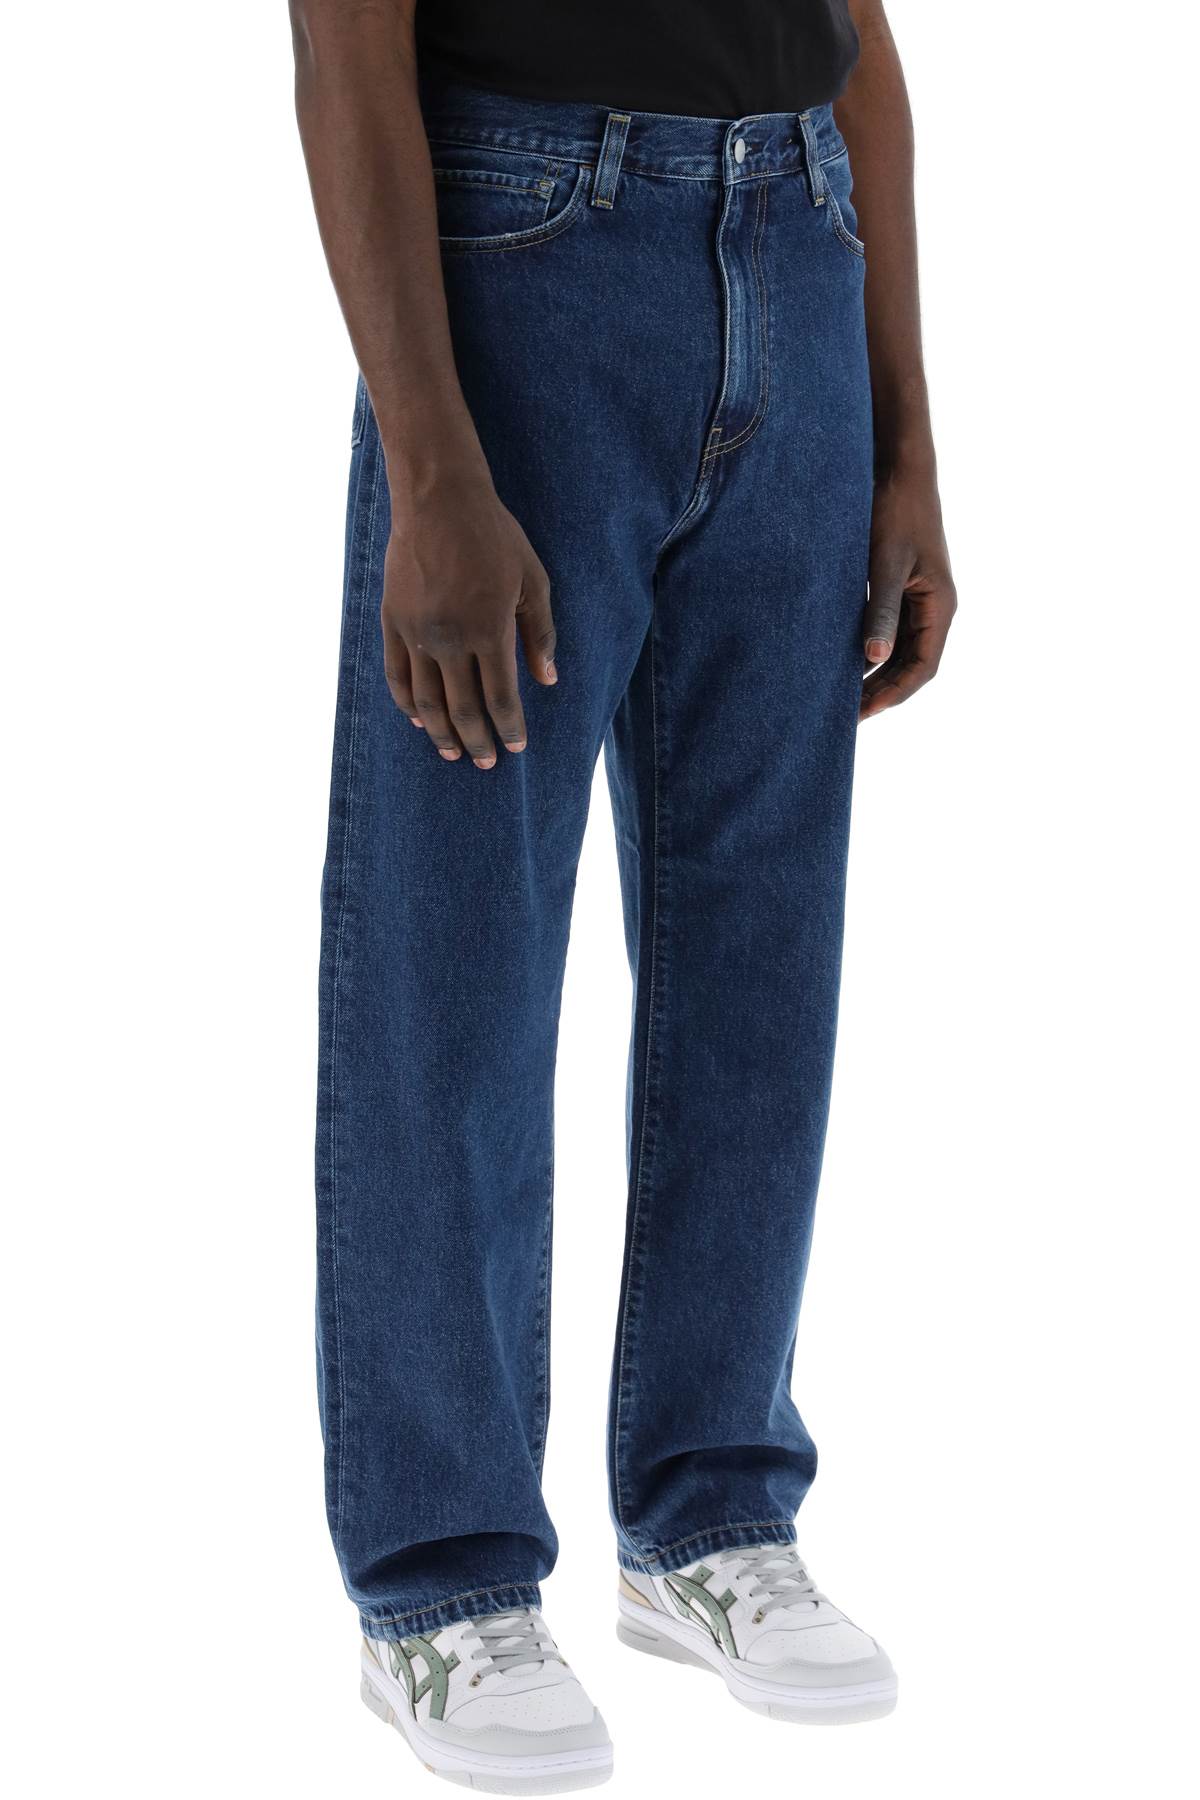 Shop Carhartt Landon Loose Fit Jeans